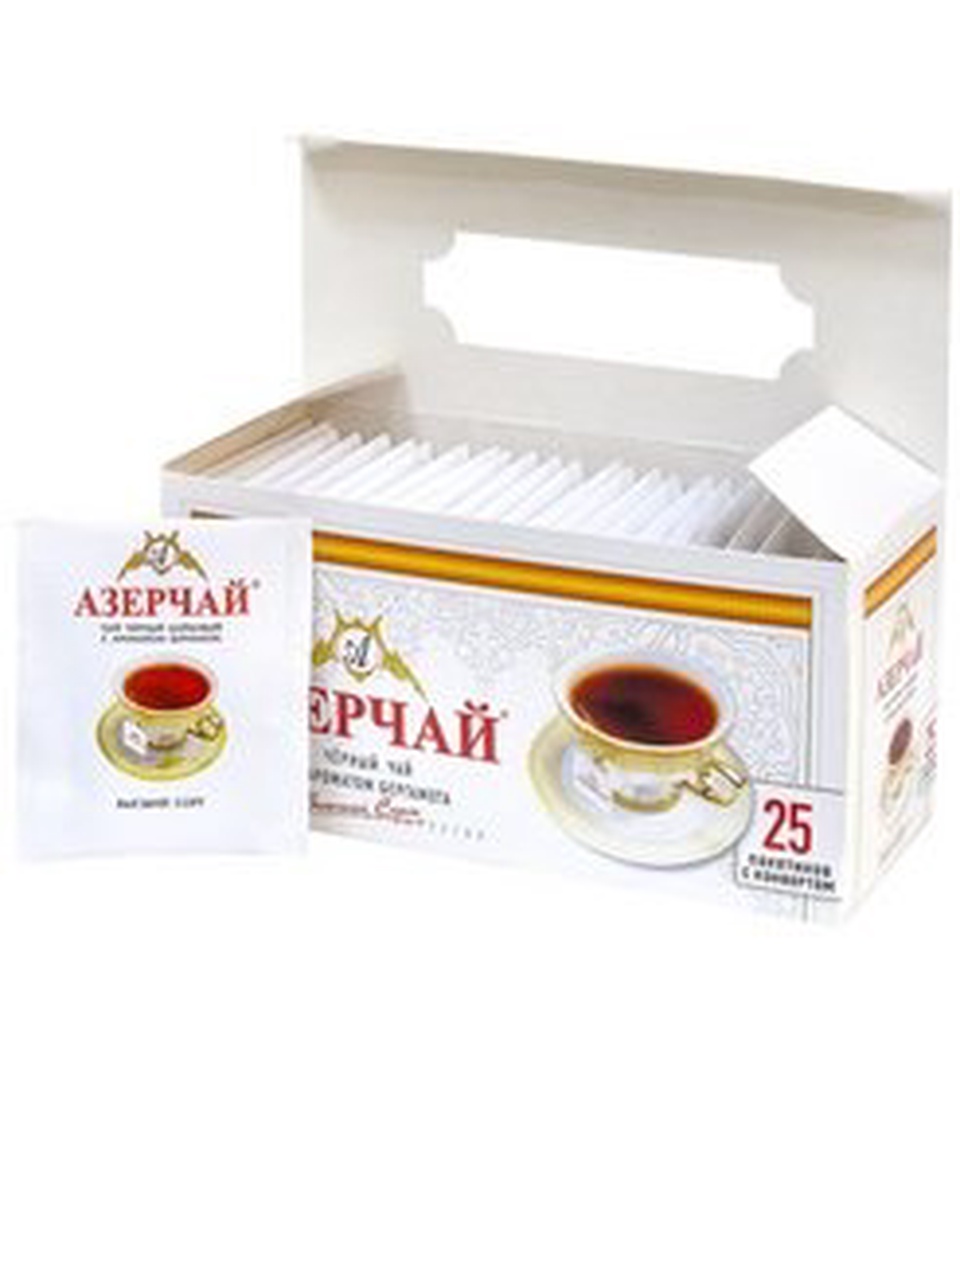 Азерчай черный с ароматом бергамота 25п в конверте - 90 ₽, заказать онлайн.